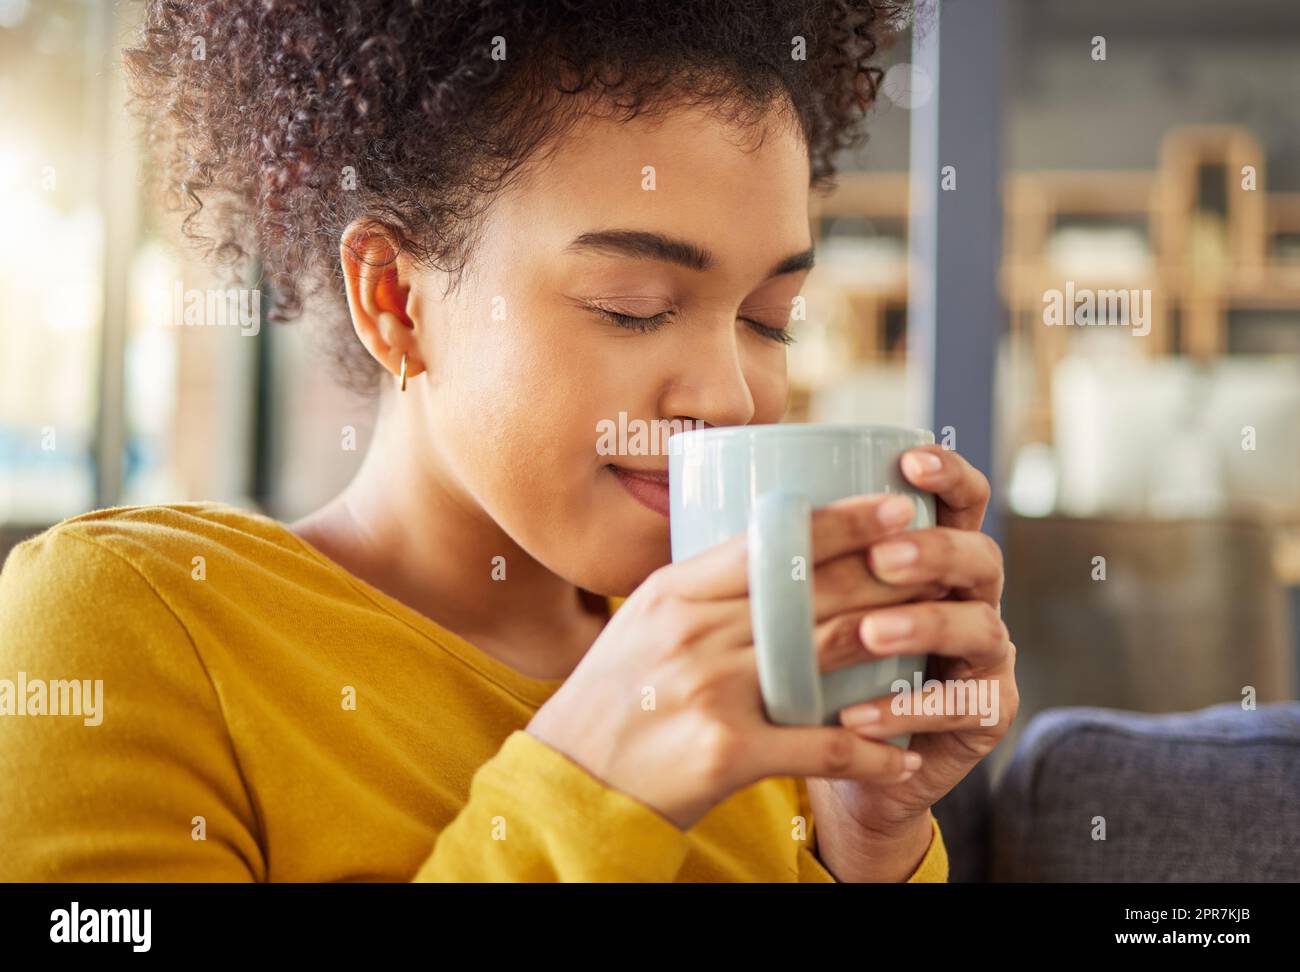 Junge glückliche Mischrasse Frau, die zu Hause eine Tasse Kaffee hält und trinkt. Eine gemütliche hispanische Frau duftet und genießt eine Tasse Tee, während Sie sich zu Hause entspannen Stockfoto